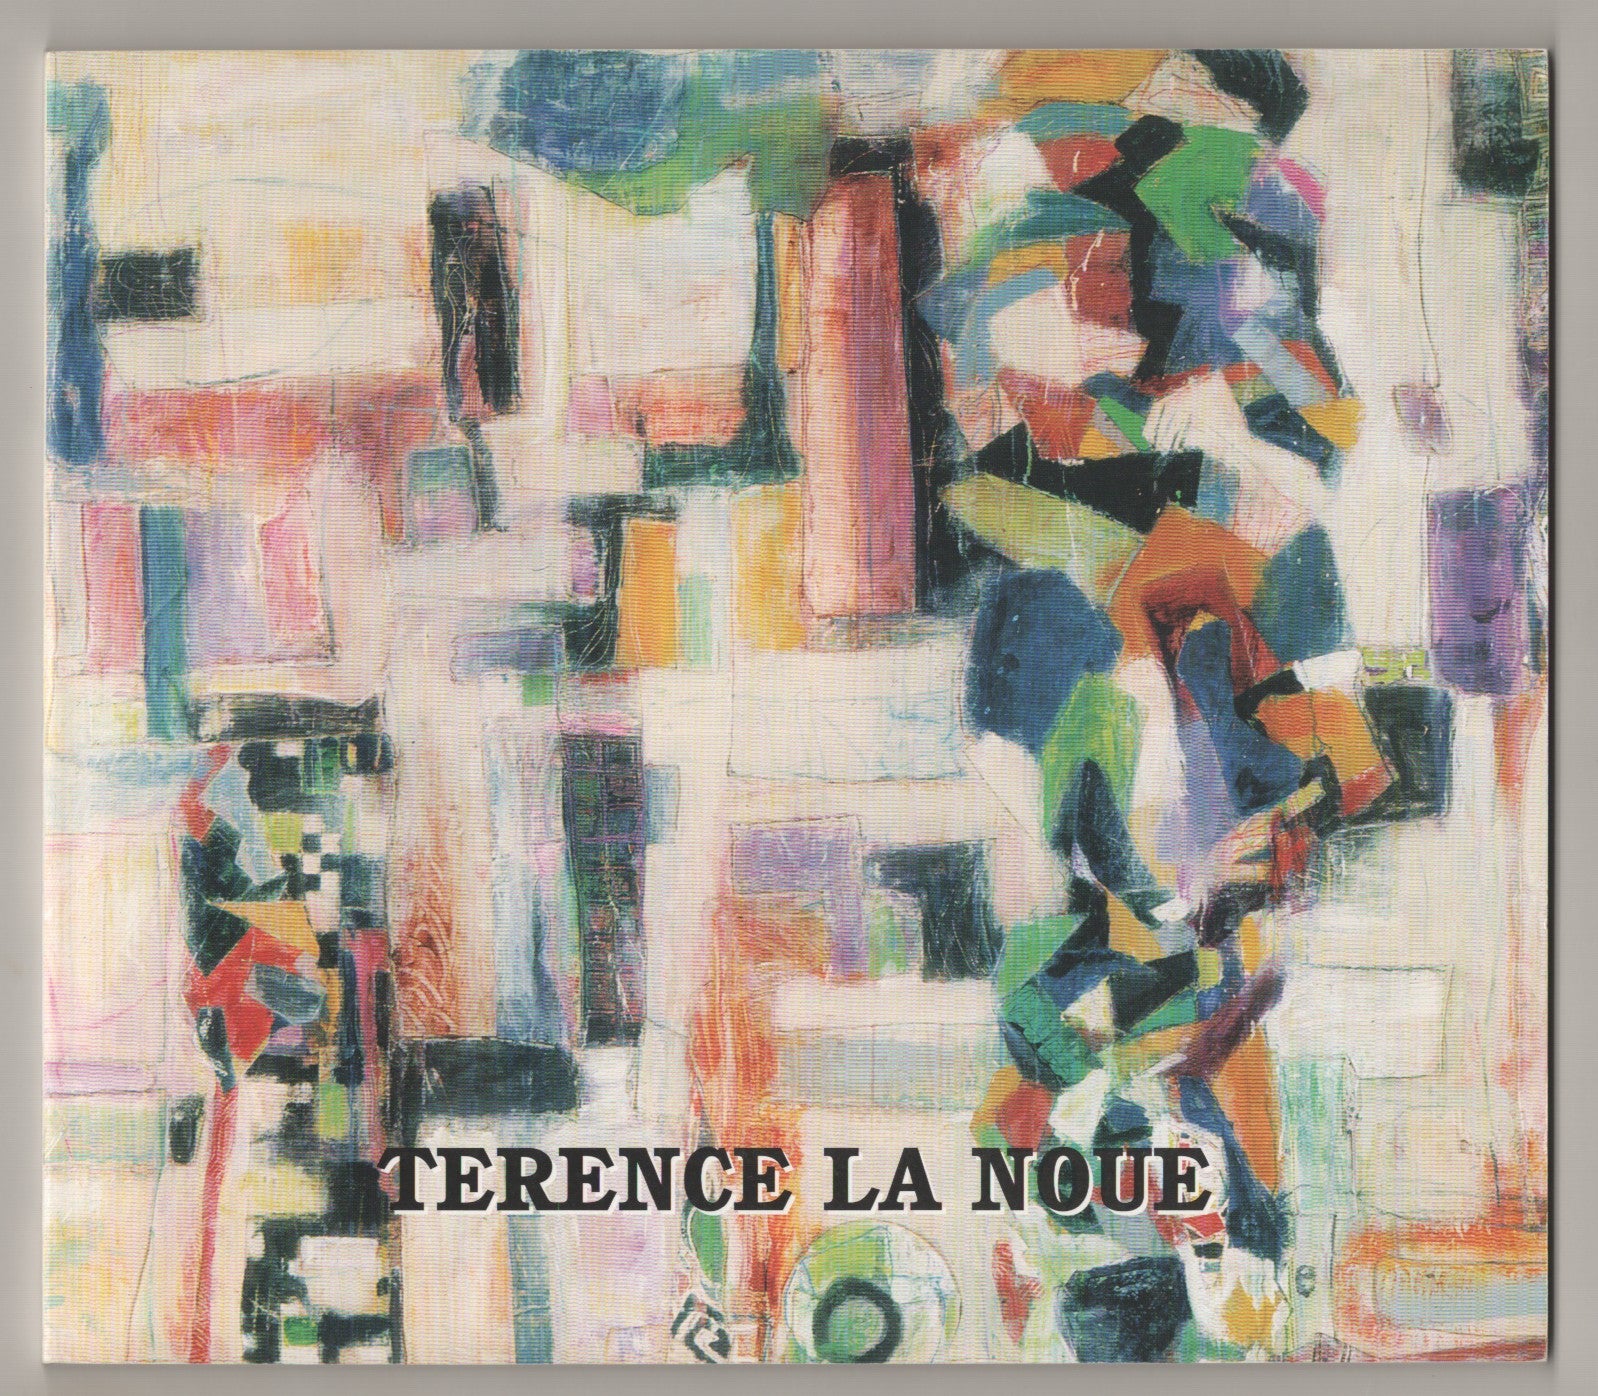 Terence La Noue by Frank GAARD